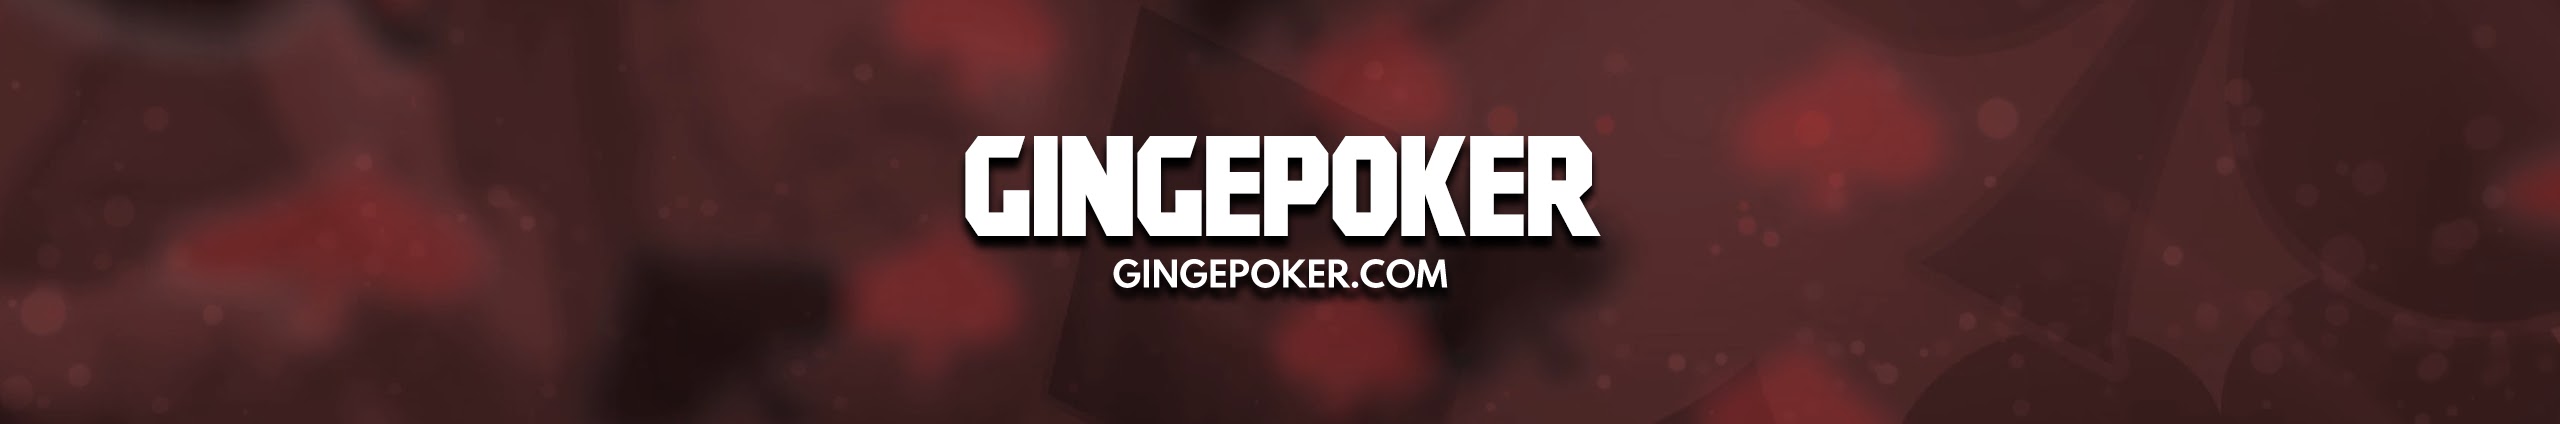 sites de poker gratis